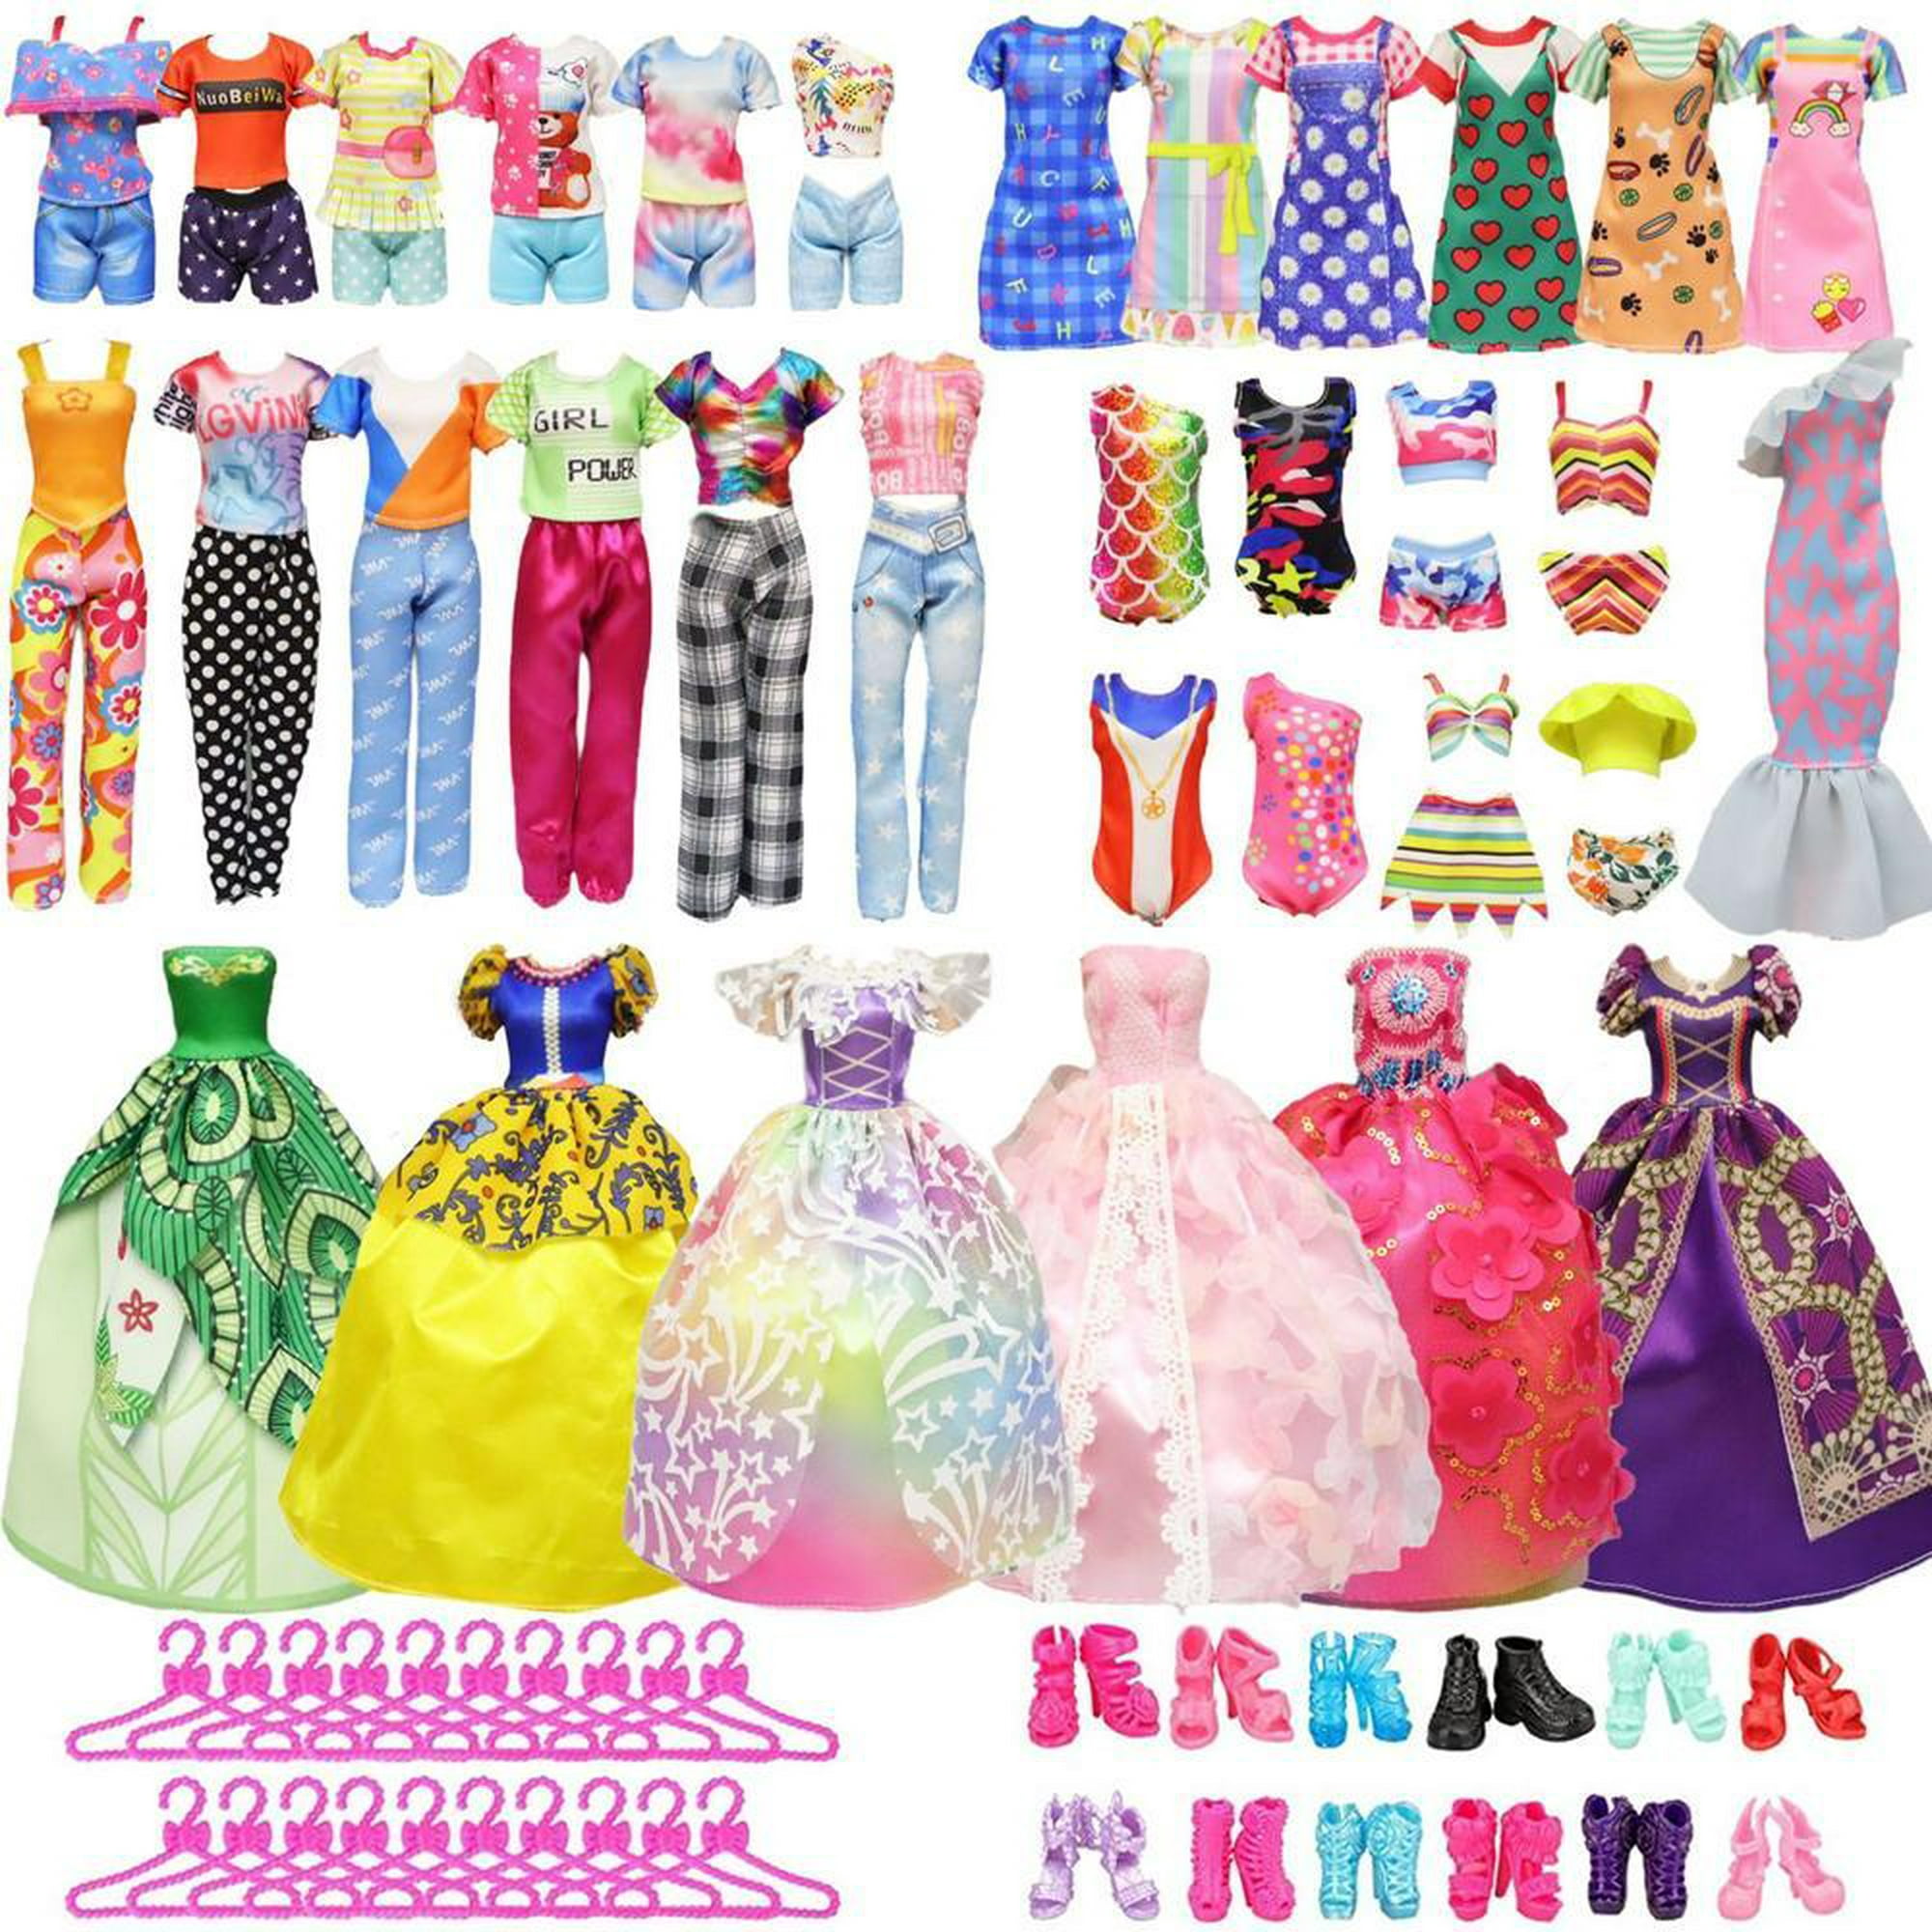 57 juegos de ropa de muñeca barbie de 30 cm juguetes de niña en casa para cambiar los accesorios de la casa de muñecas bjd